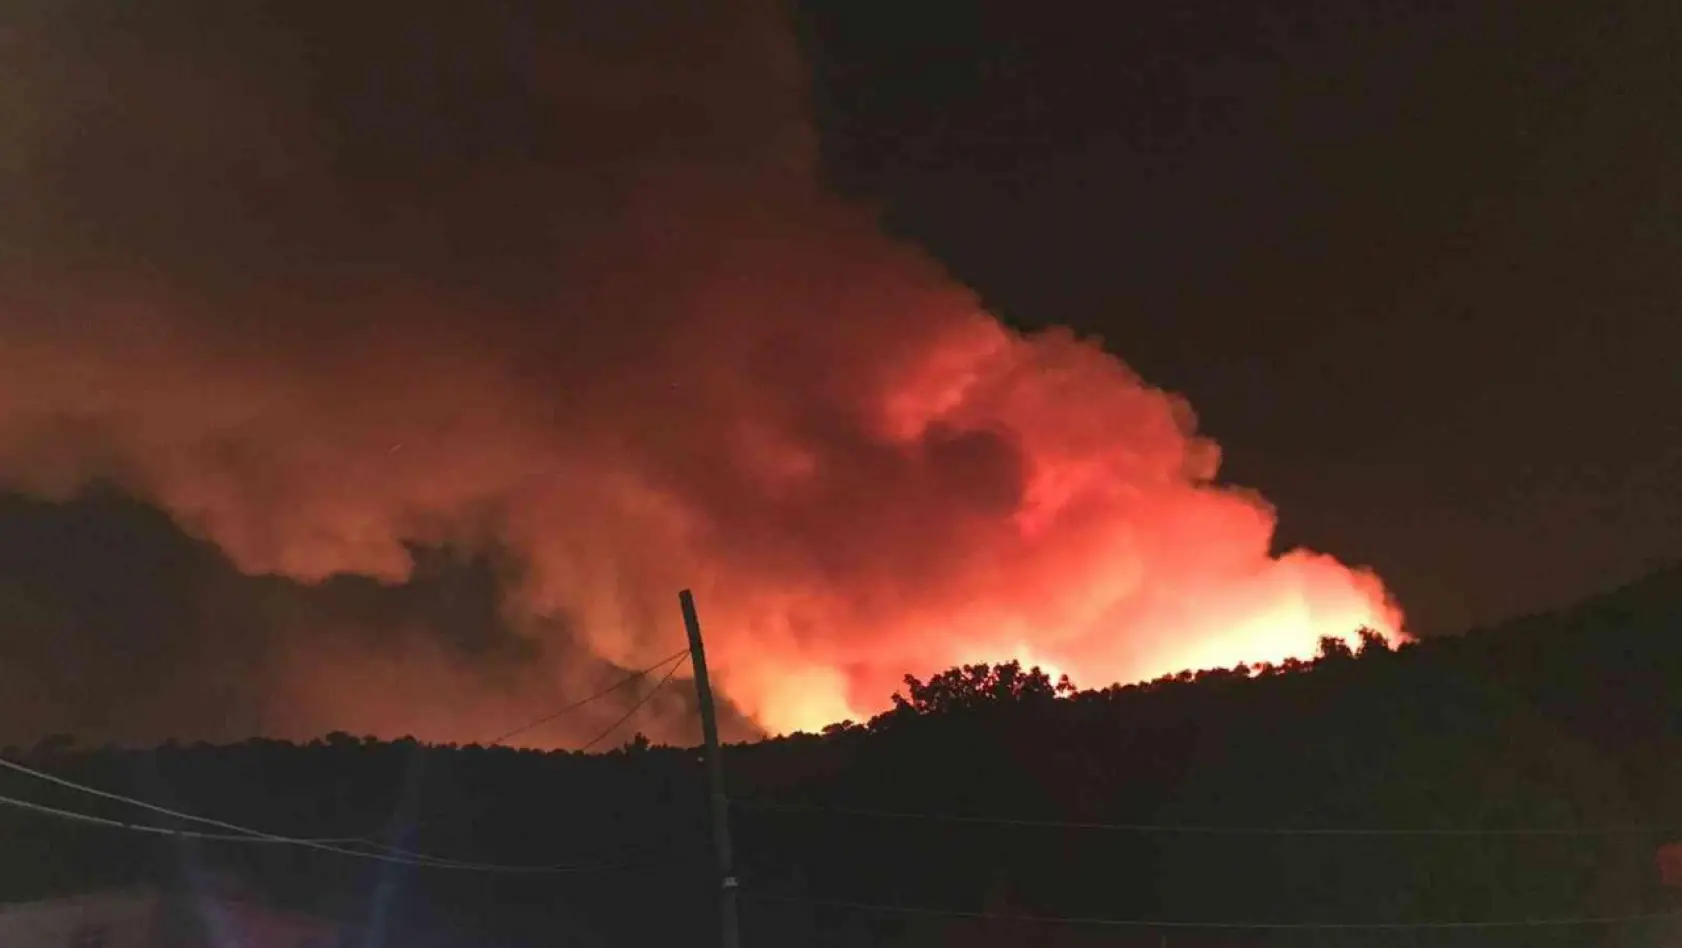 Kütahya'da orman yangınını söndürme çalışmaları devam ediyor